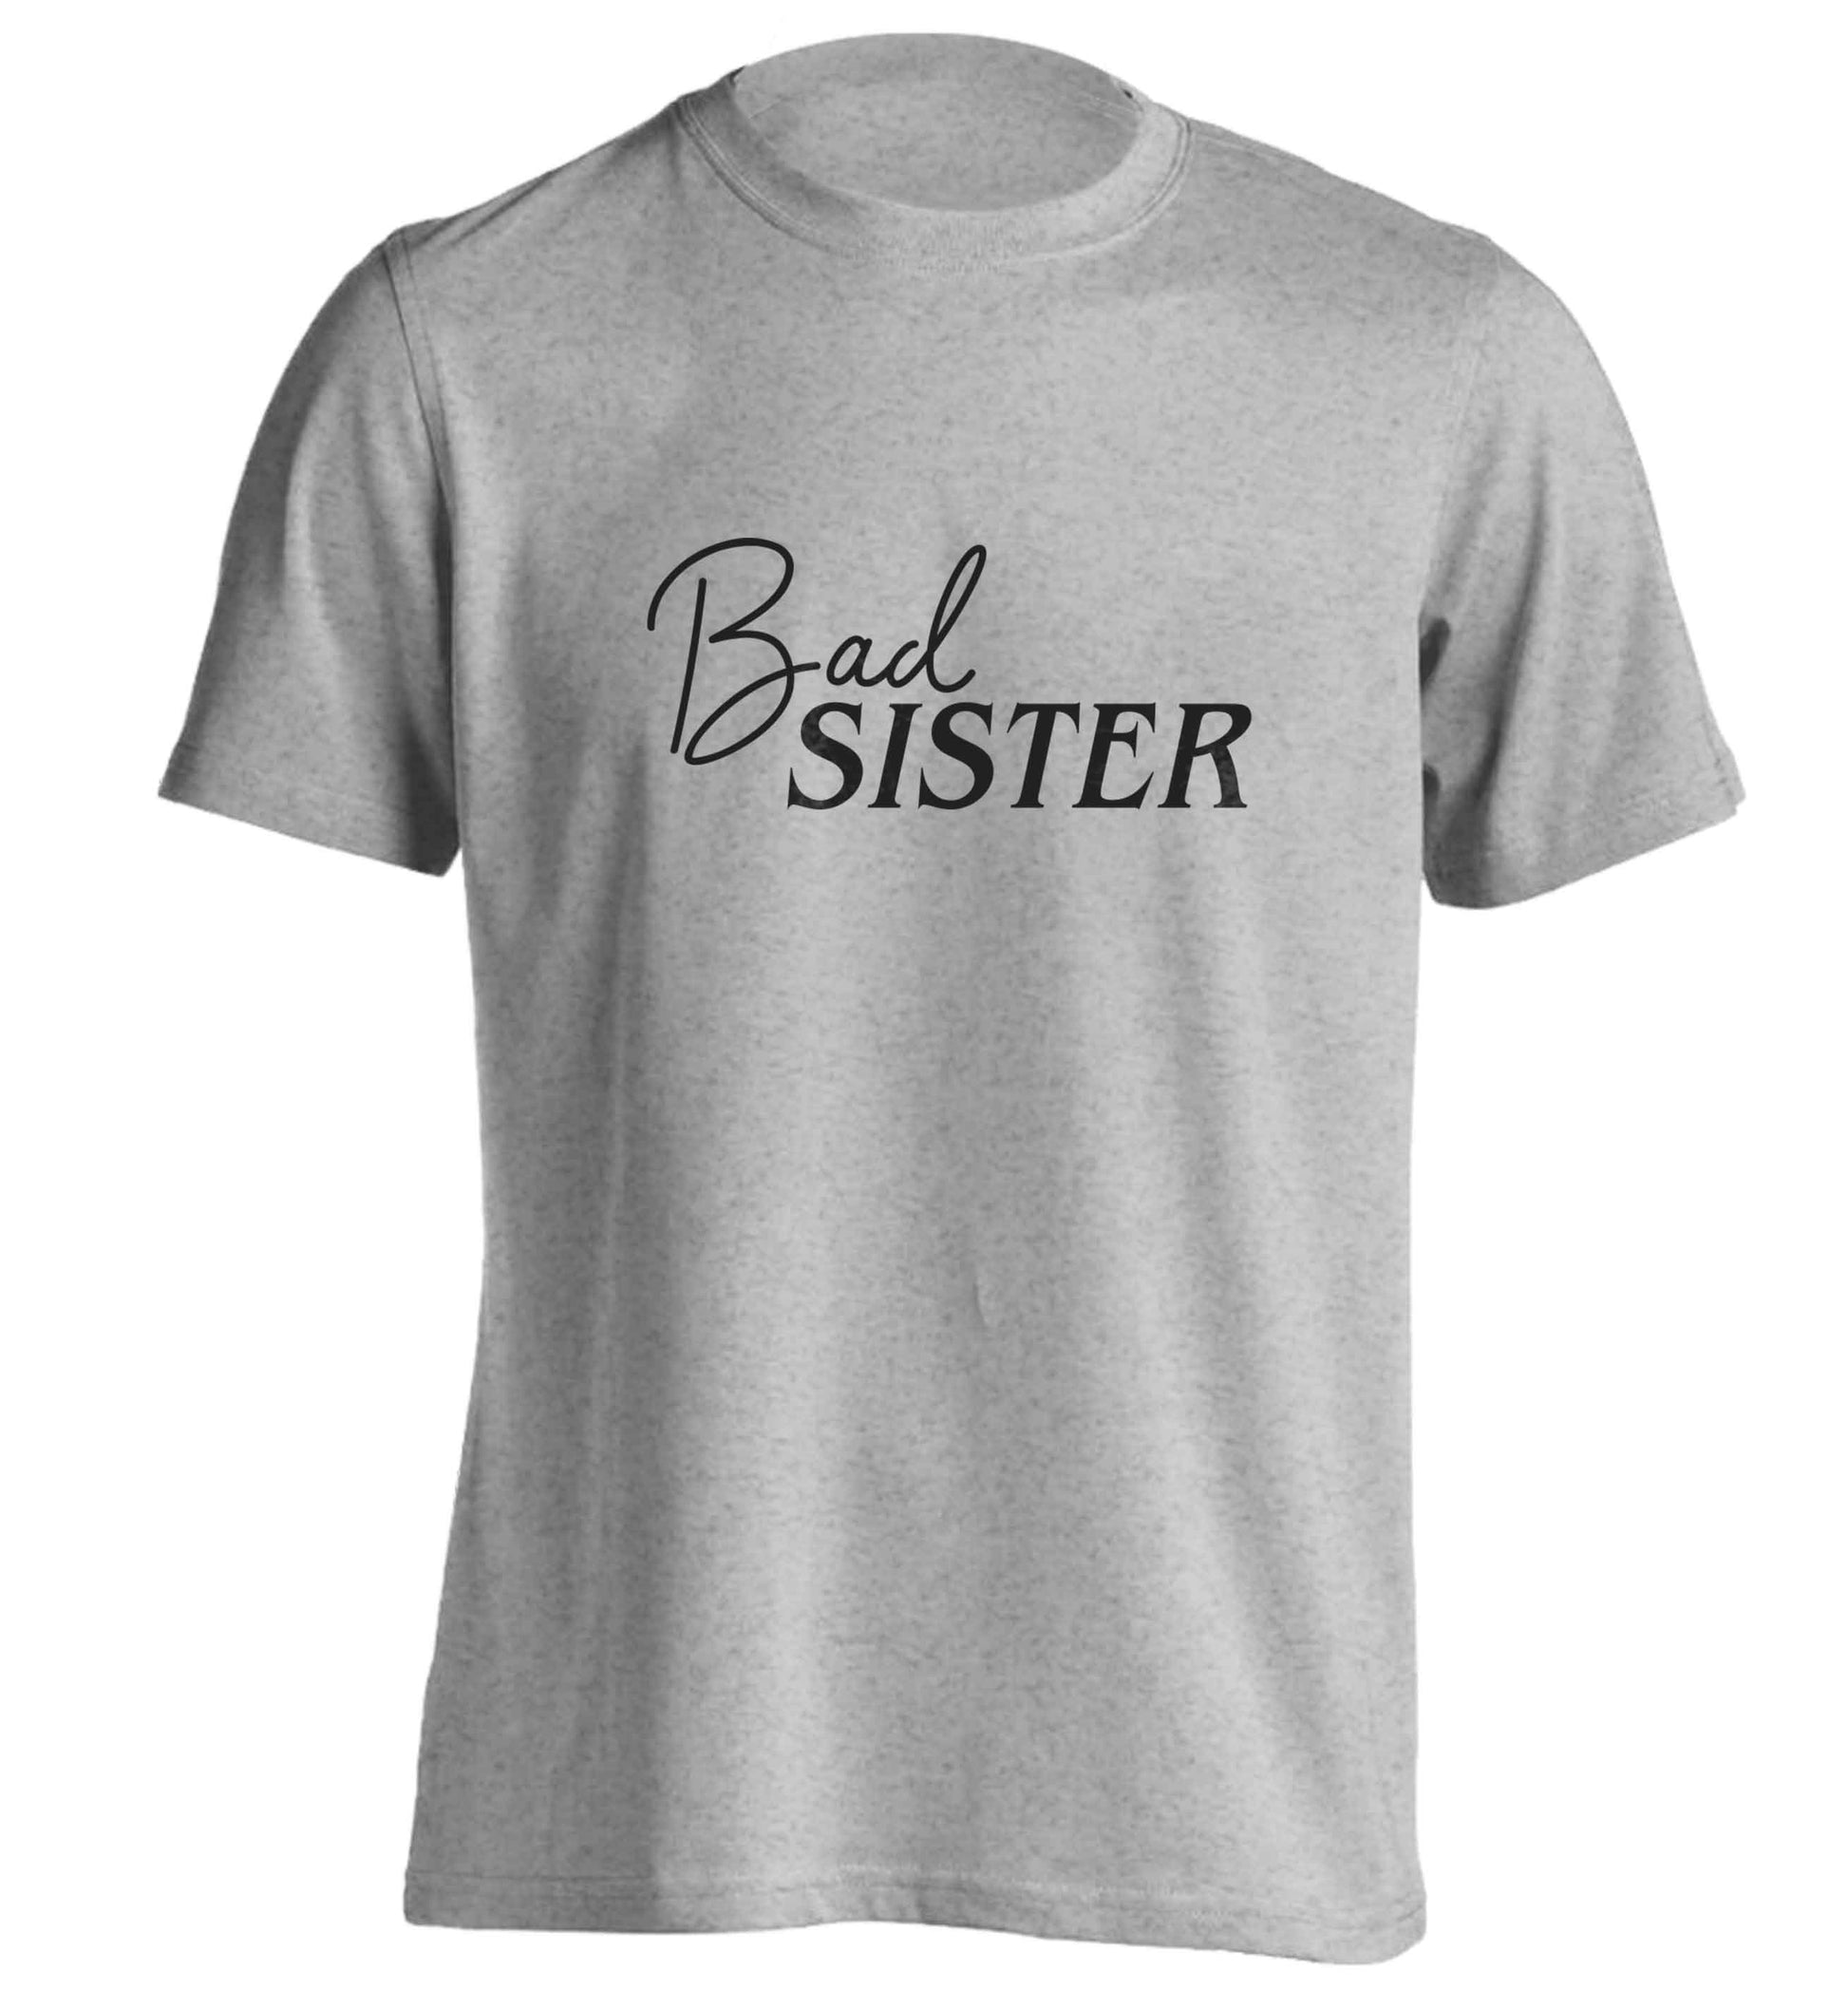 Bad sister adults unisex grey Tshirt 2XL